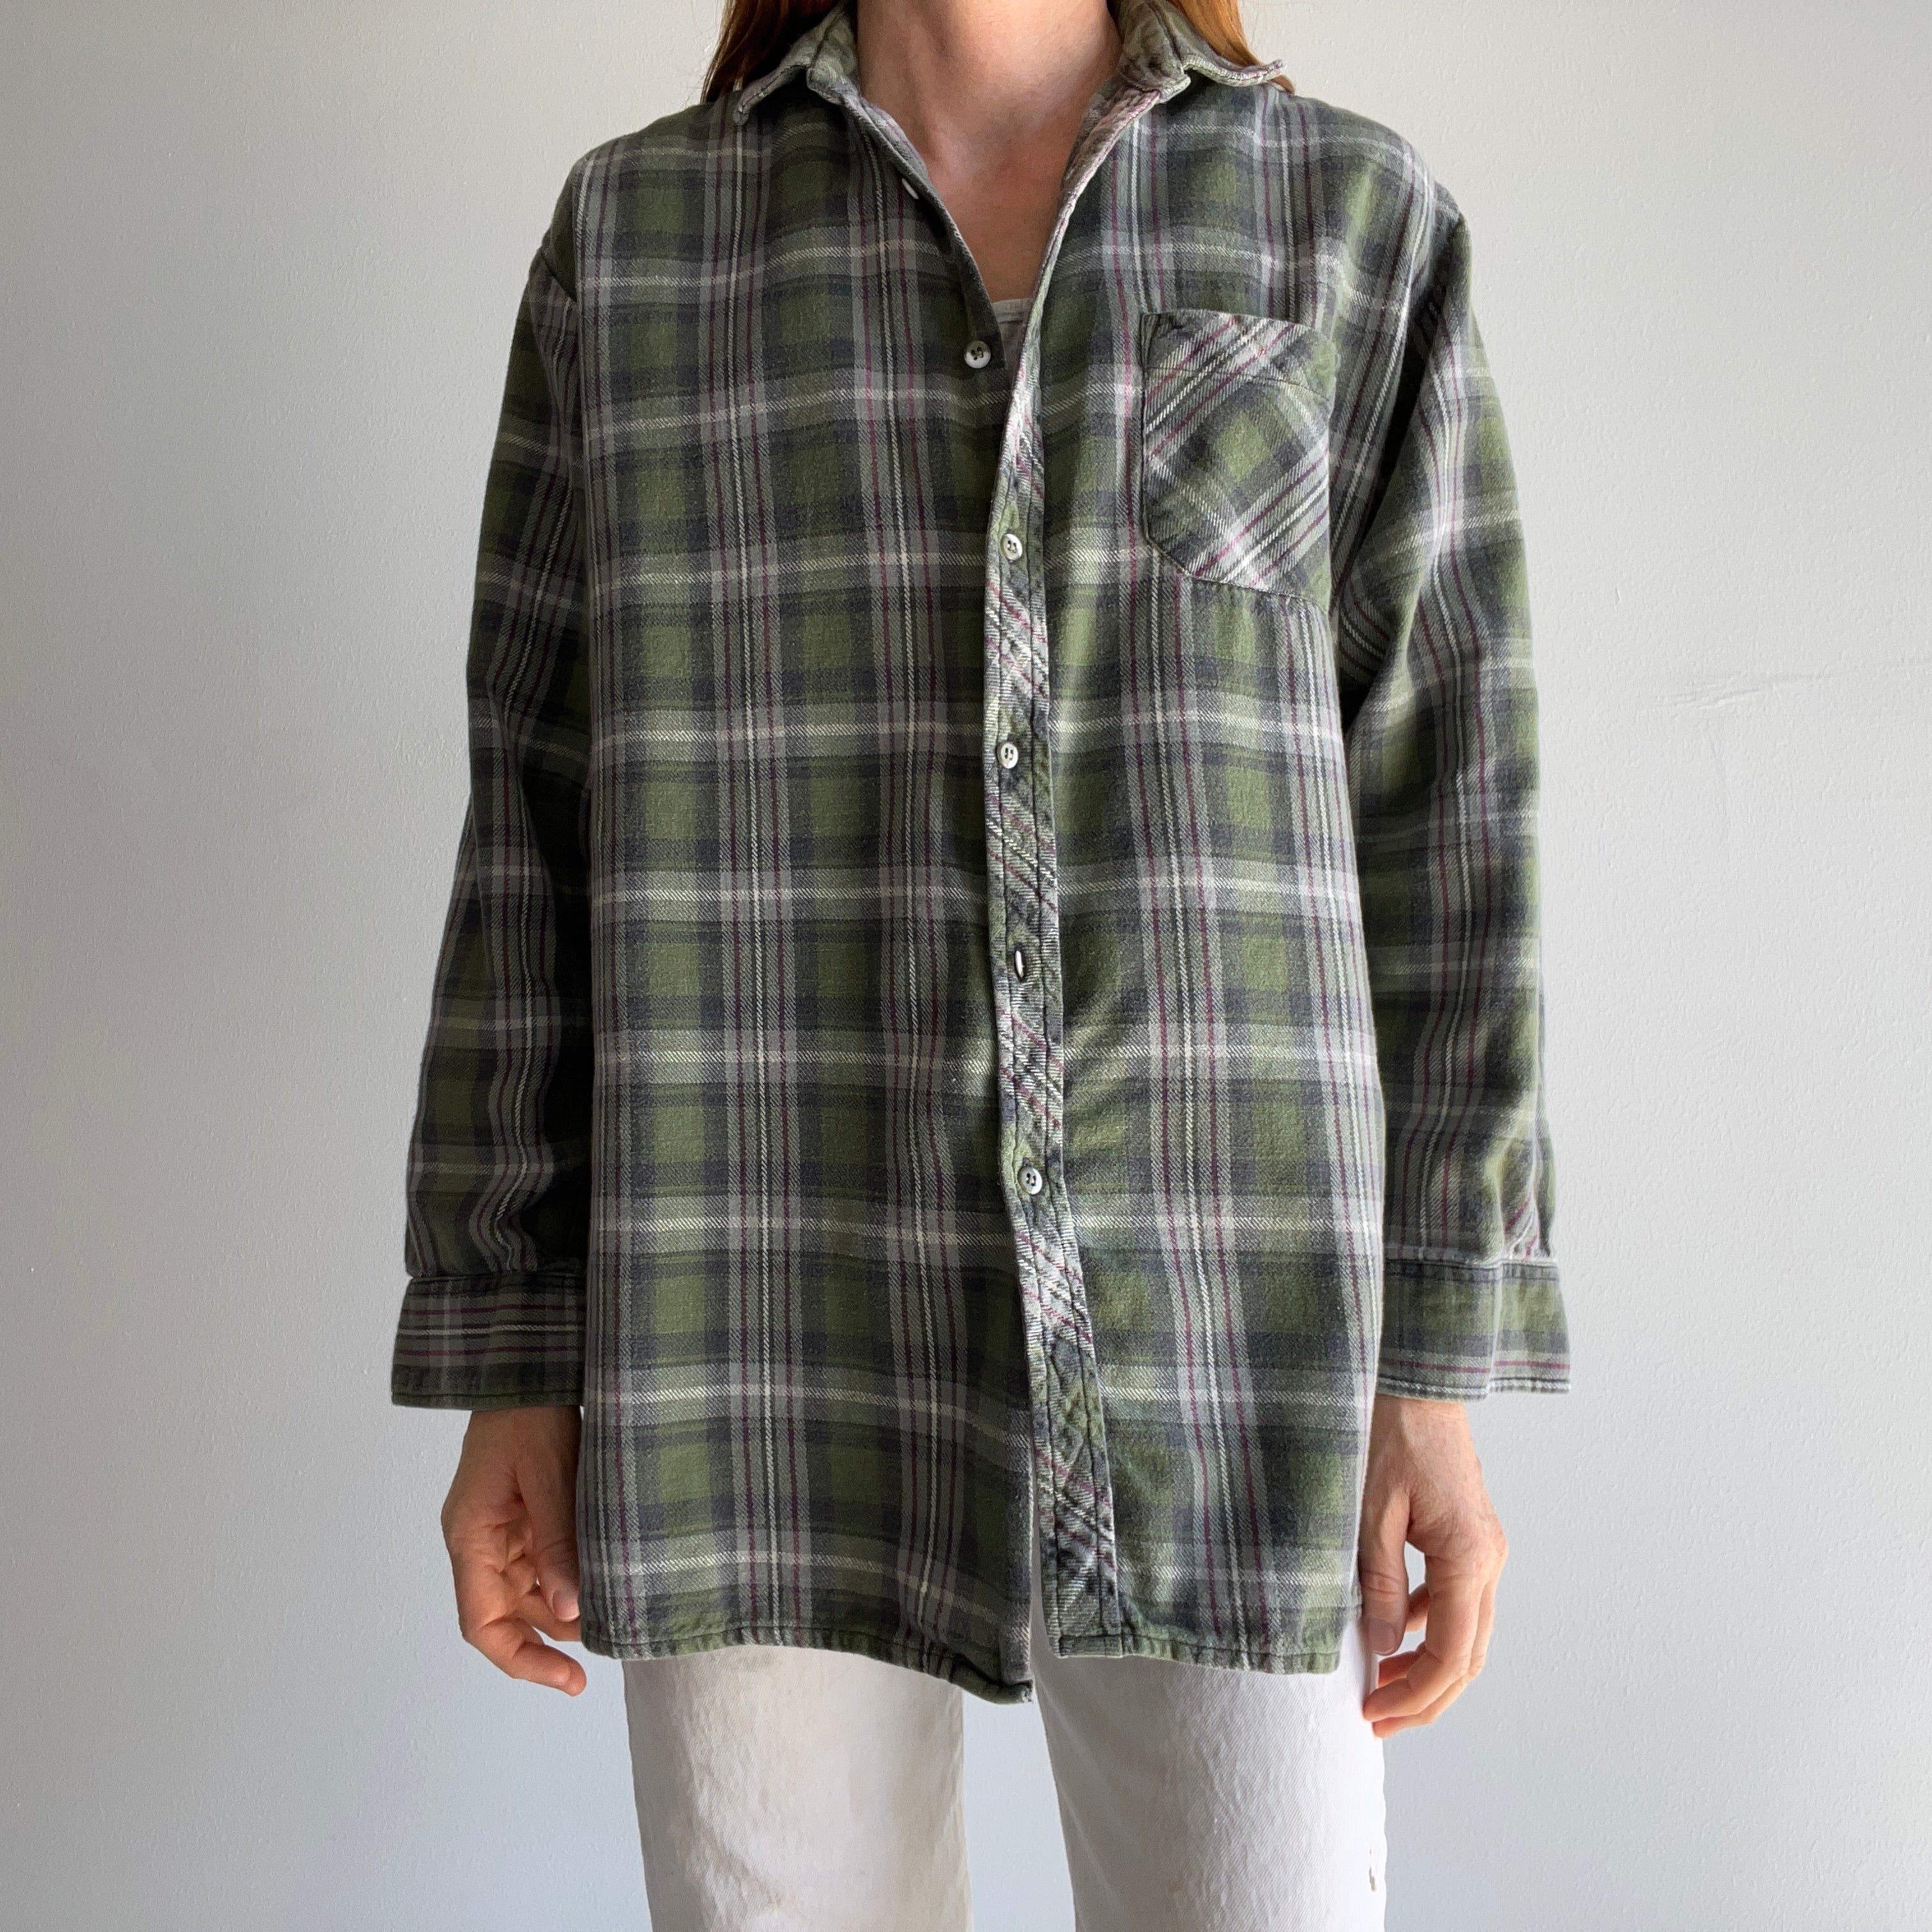 1990s European Cotton Flannel - Green Plaid